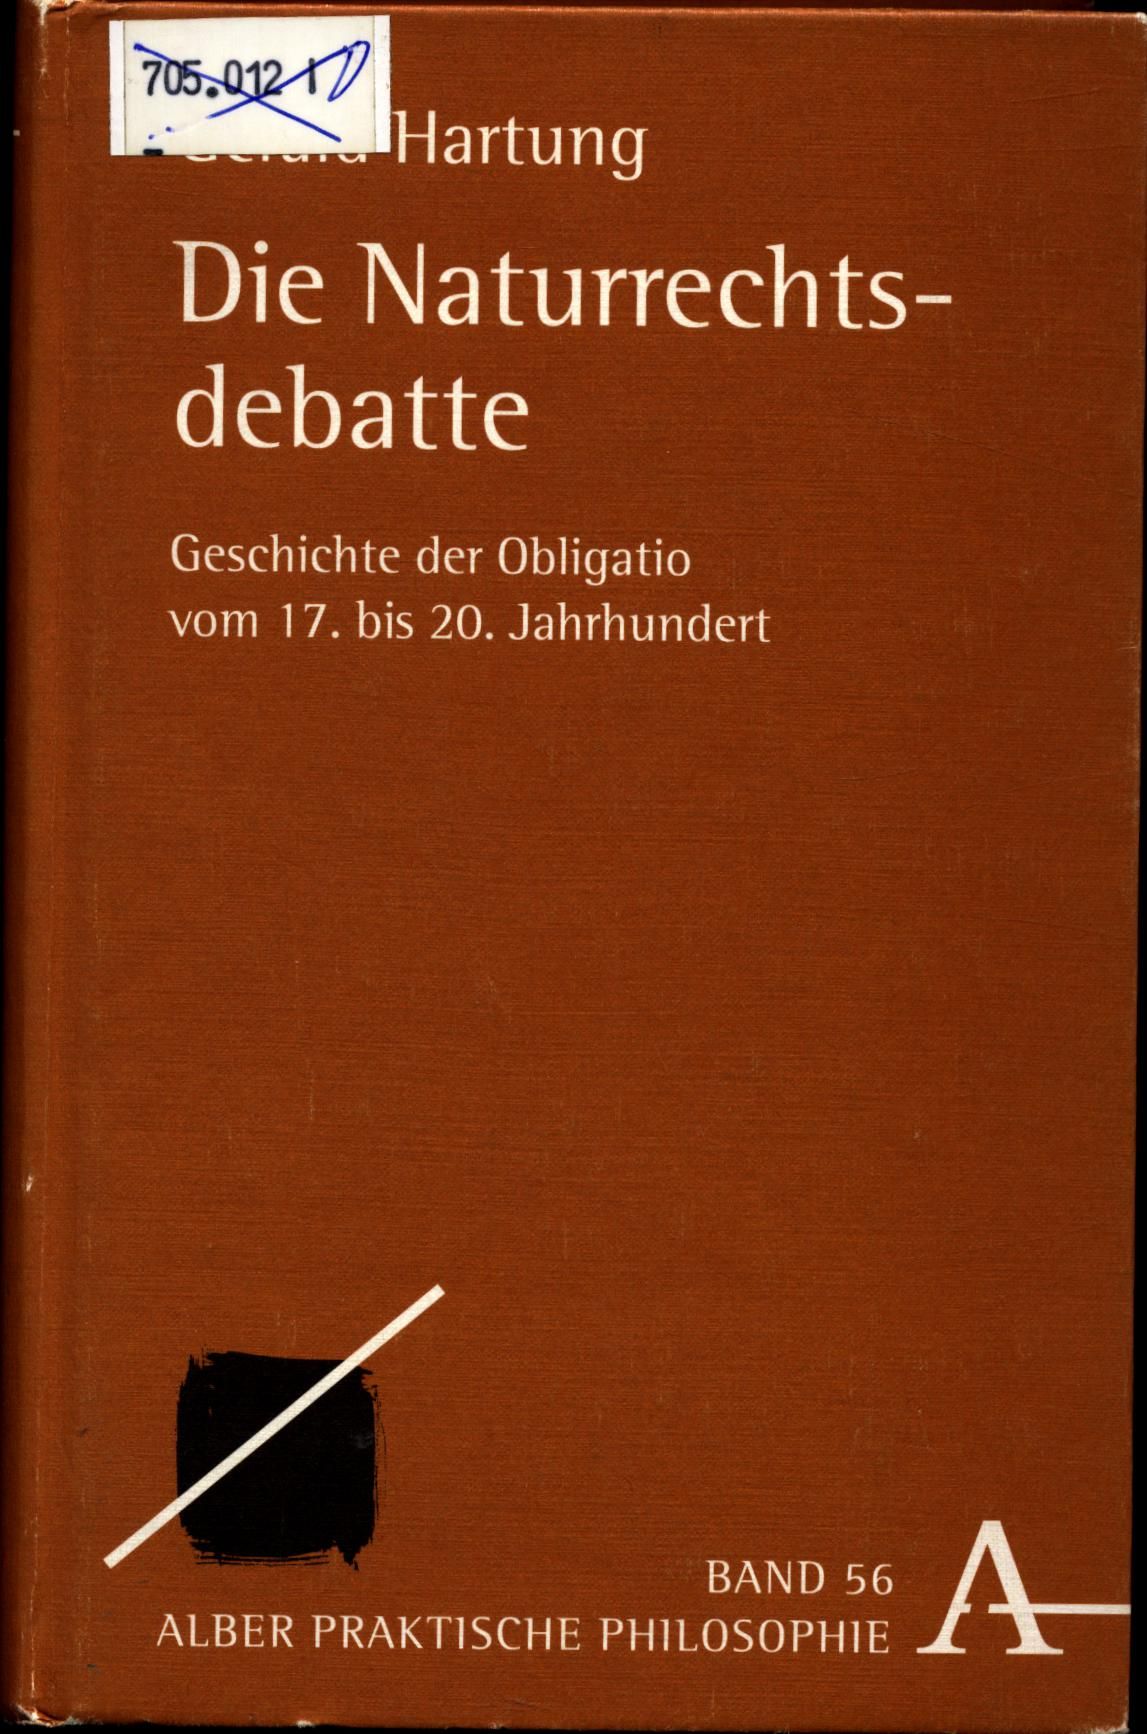 Die Naturrechtsdebatte: Geschichte der Obligatio vom 17. bis 20. Jahrhundert (Alber-Reihe Praktische Philosophie)